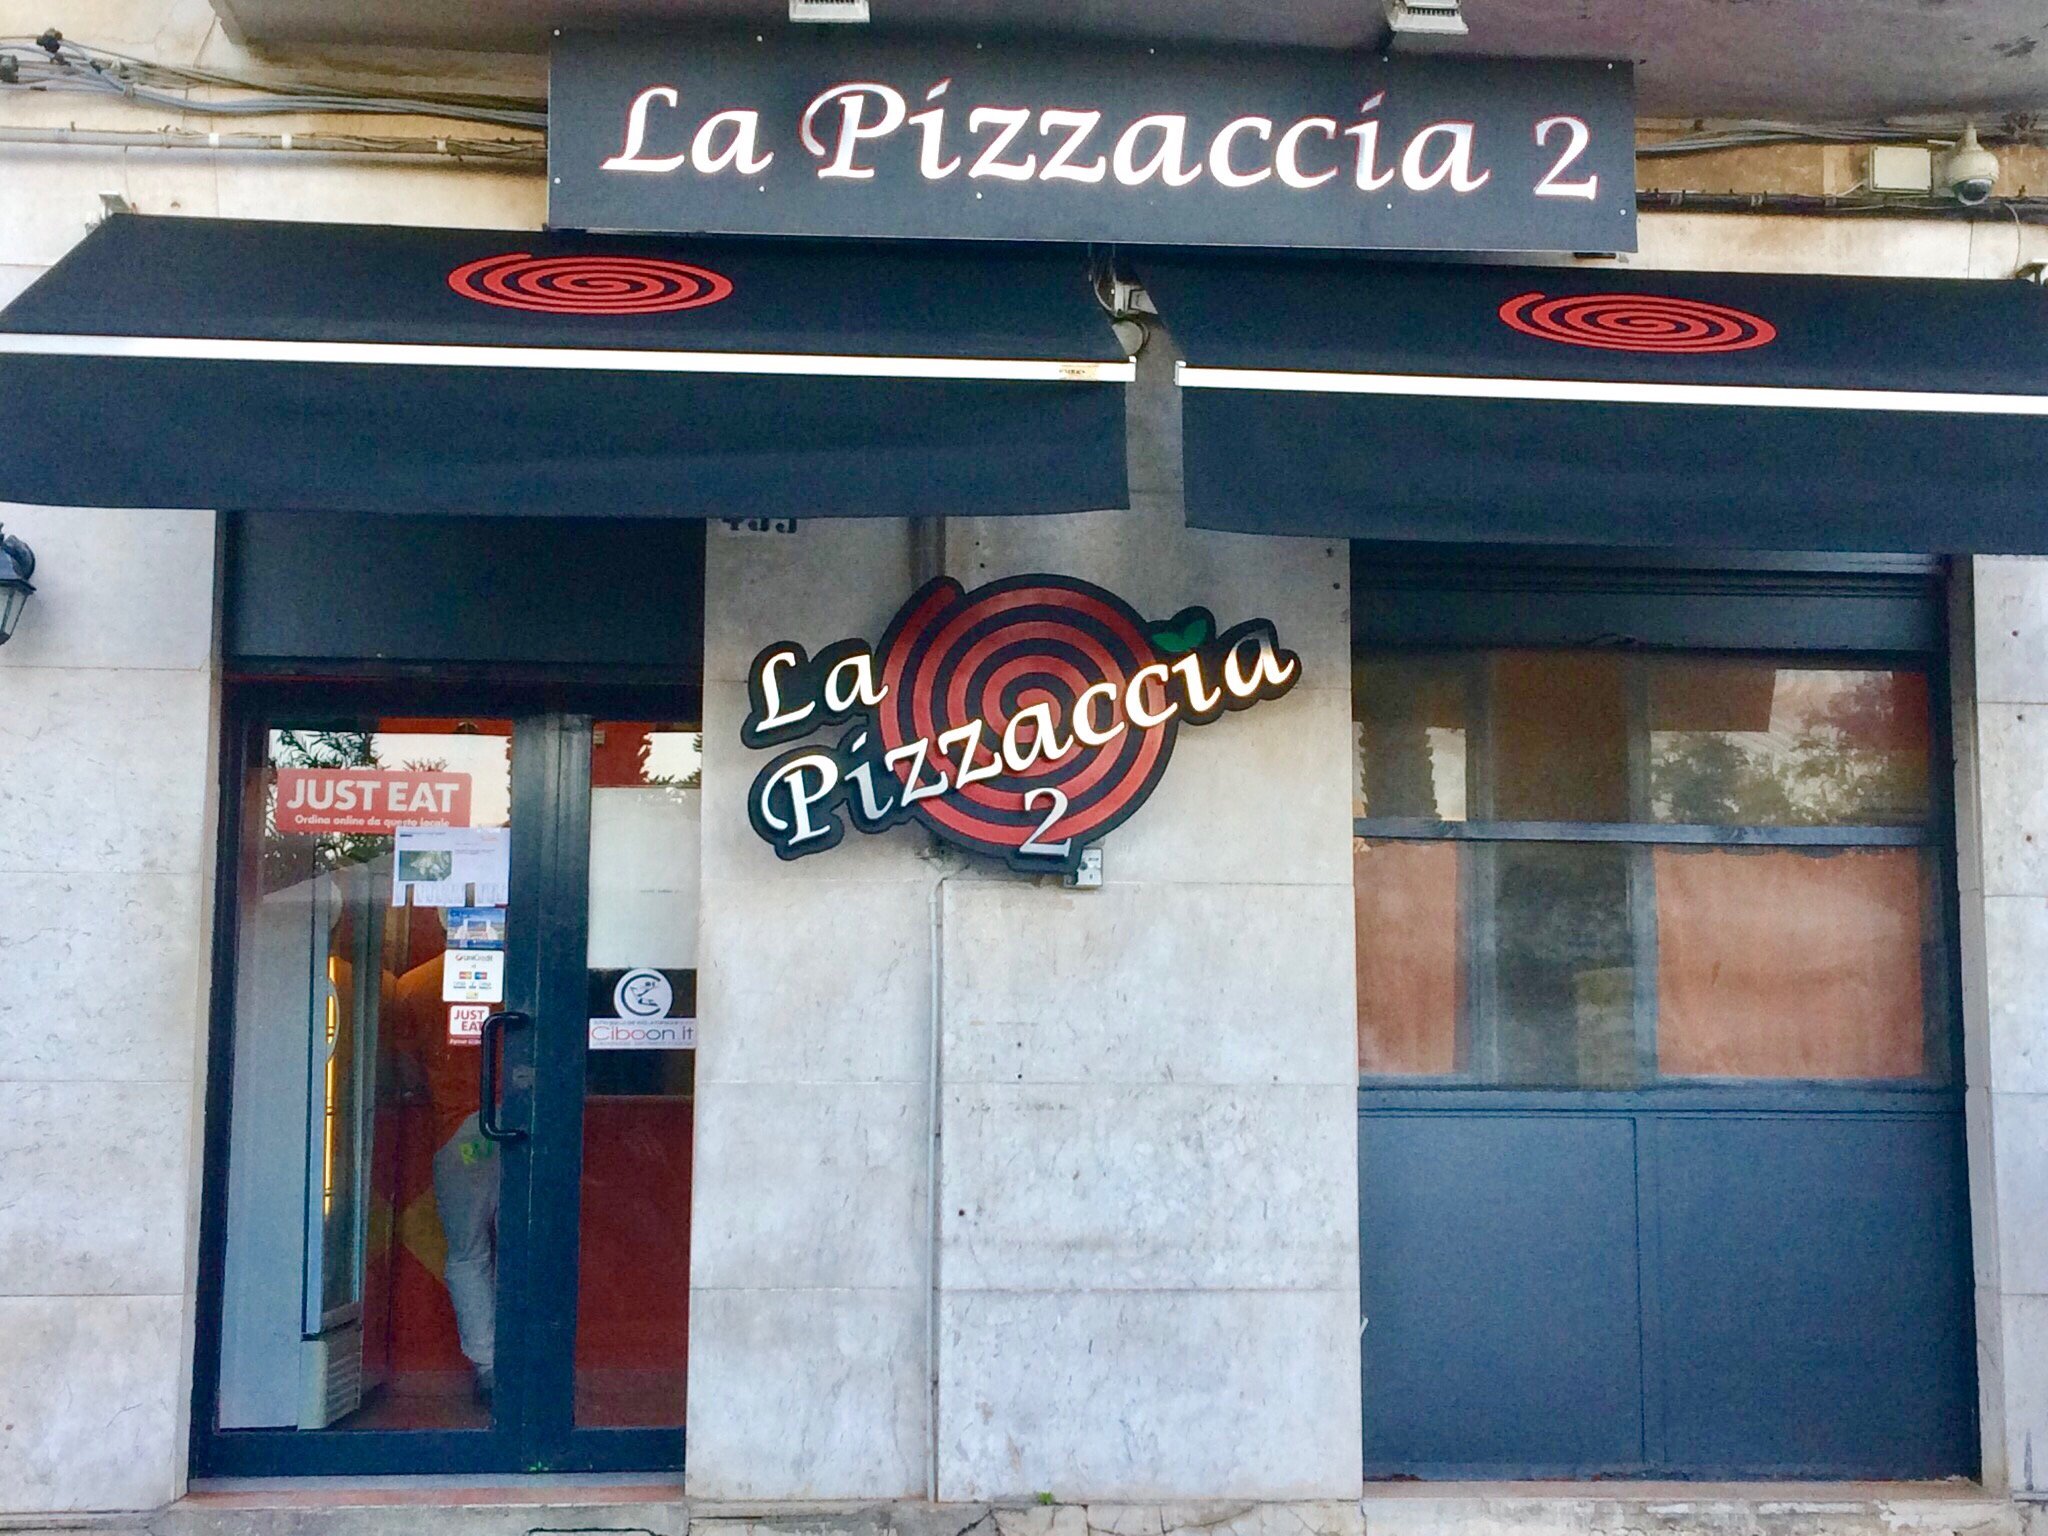 La Pizzaccia 2, Messina